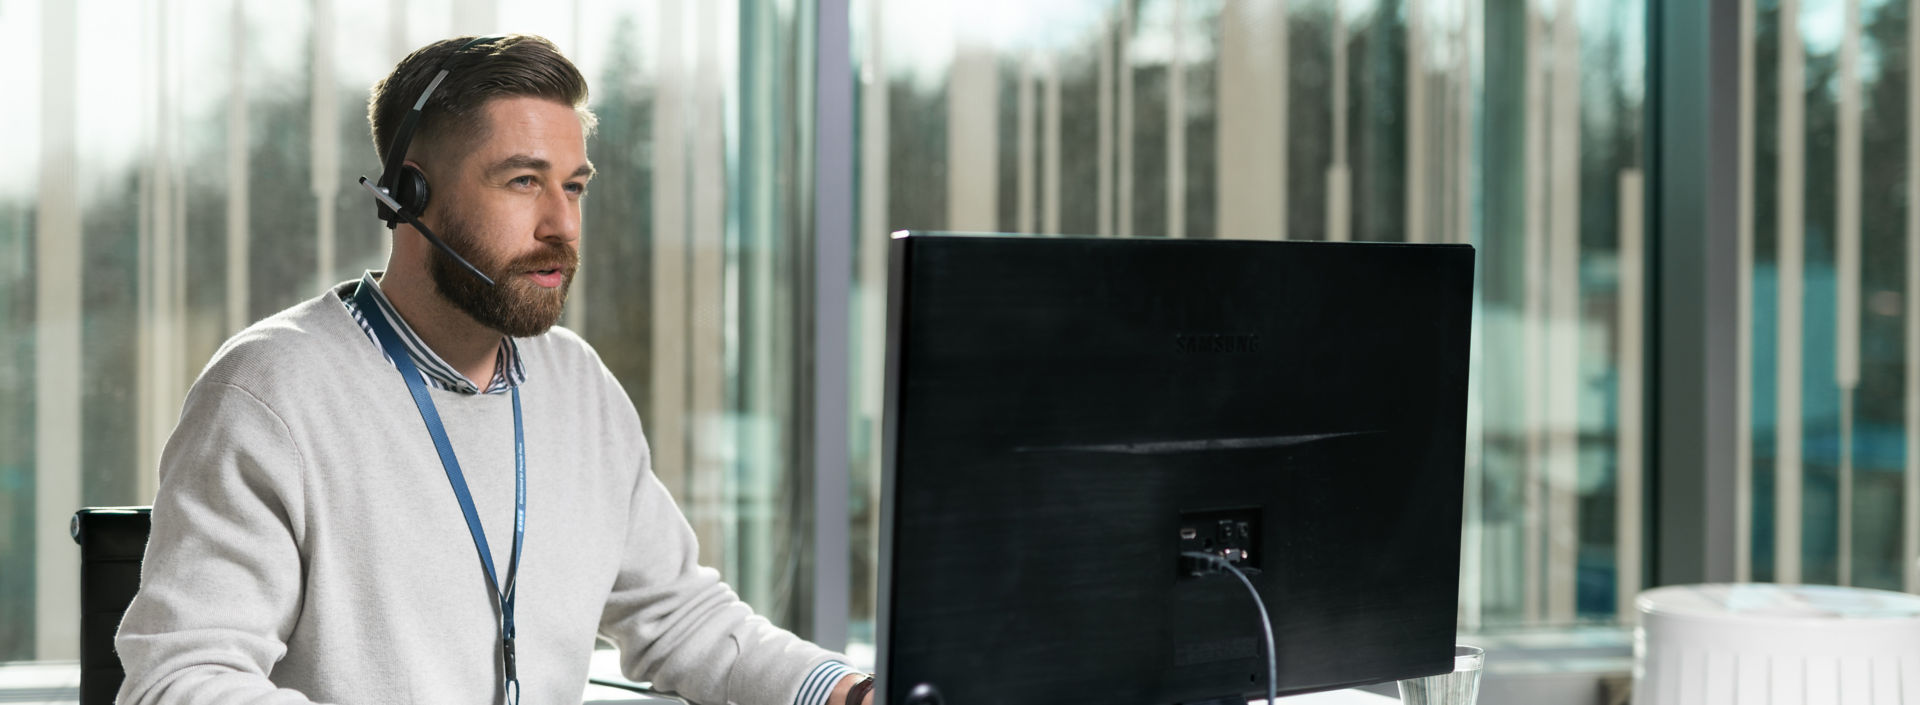 Hombre con auriculares frente a una computadora - KONE Servicio al cliente